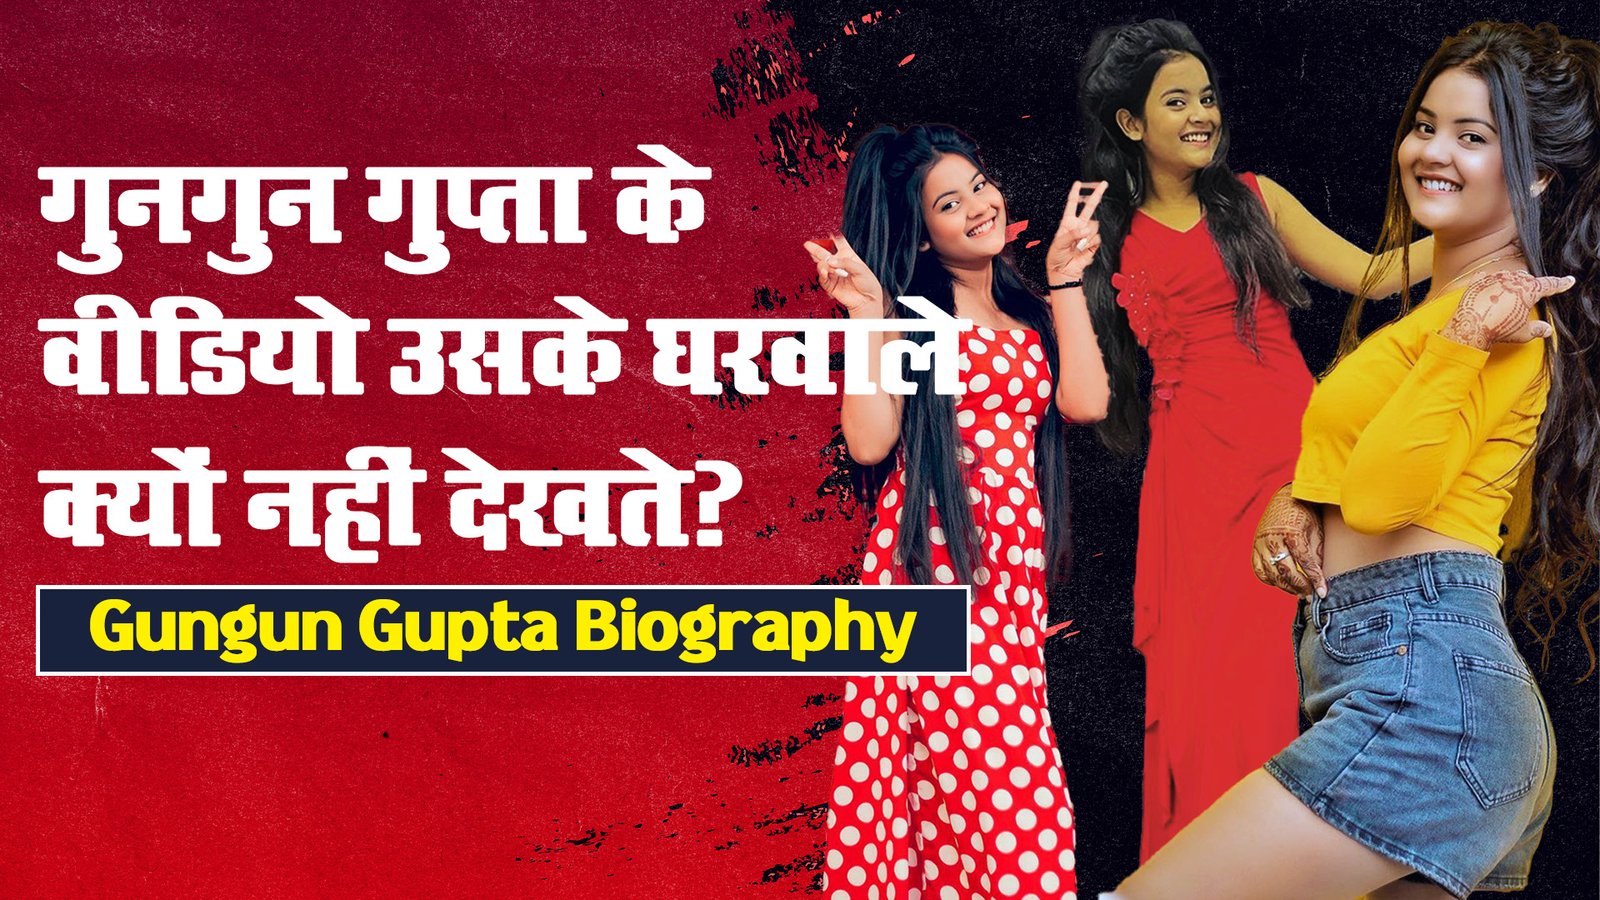 Instagrammer Gungun Gupta Biography